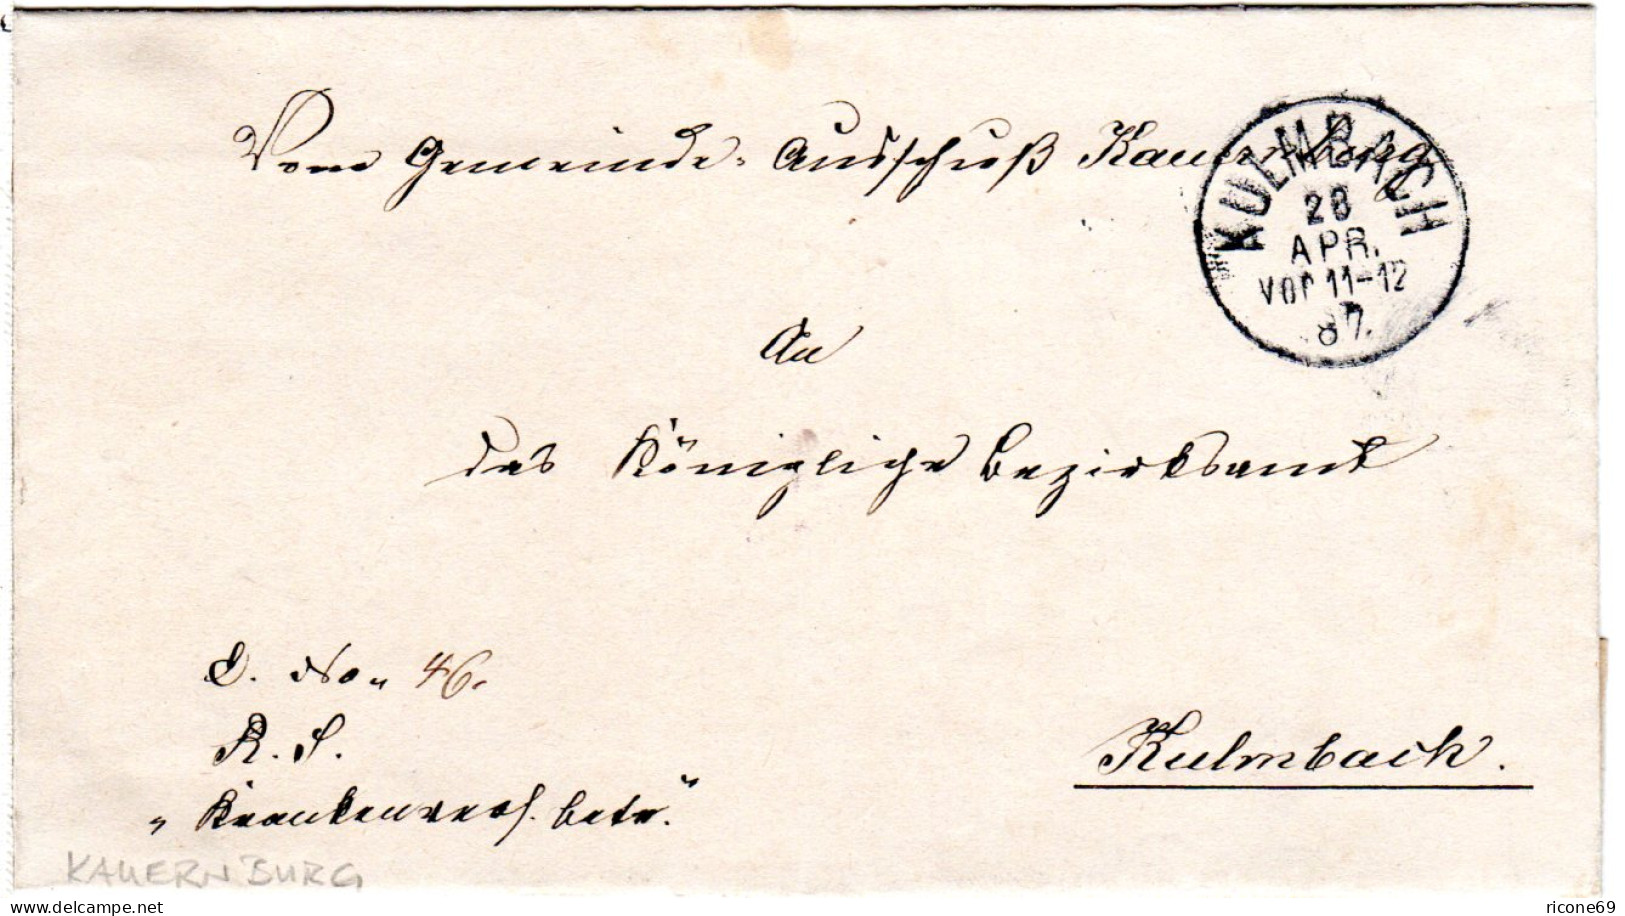 Bayern 1887, K1 KULMBACH Auf Amtsbrief Des Gemeinde Ausschuß Kauernburg. - Covers & Documents